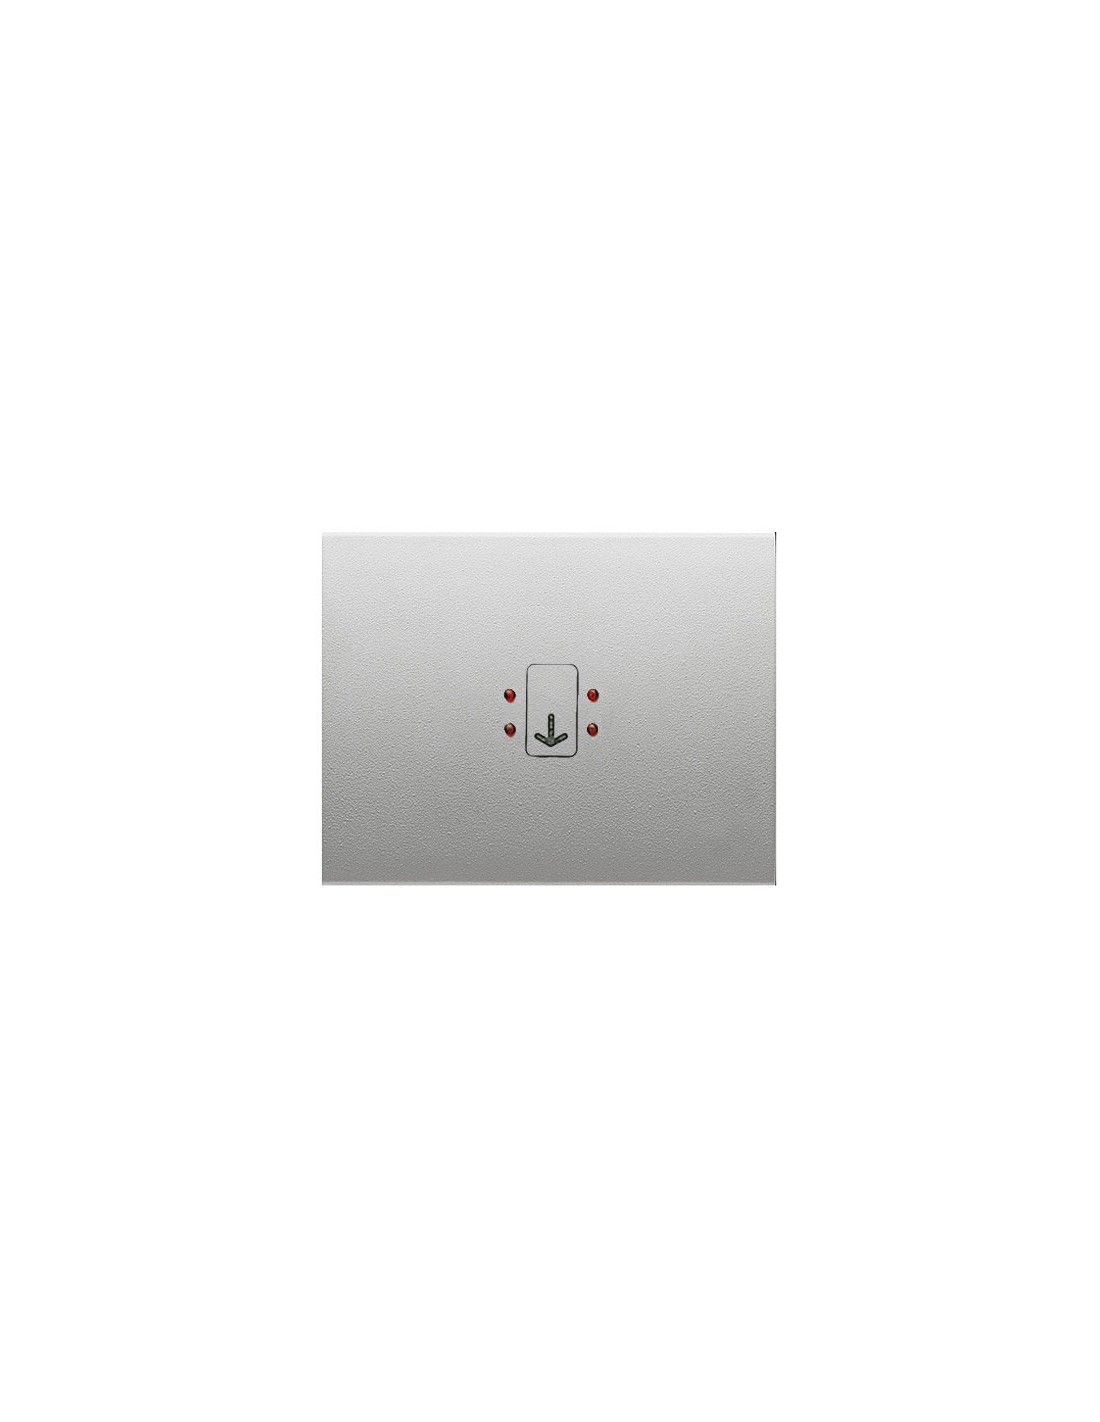 Tecla interruptor-conmutador NIESSEN Olas 8401 BL - La Tienda de  Electricidad